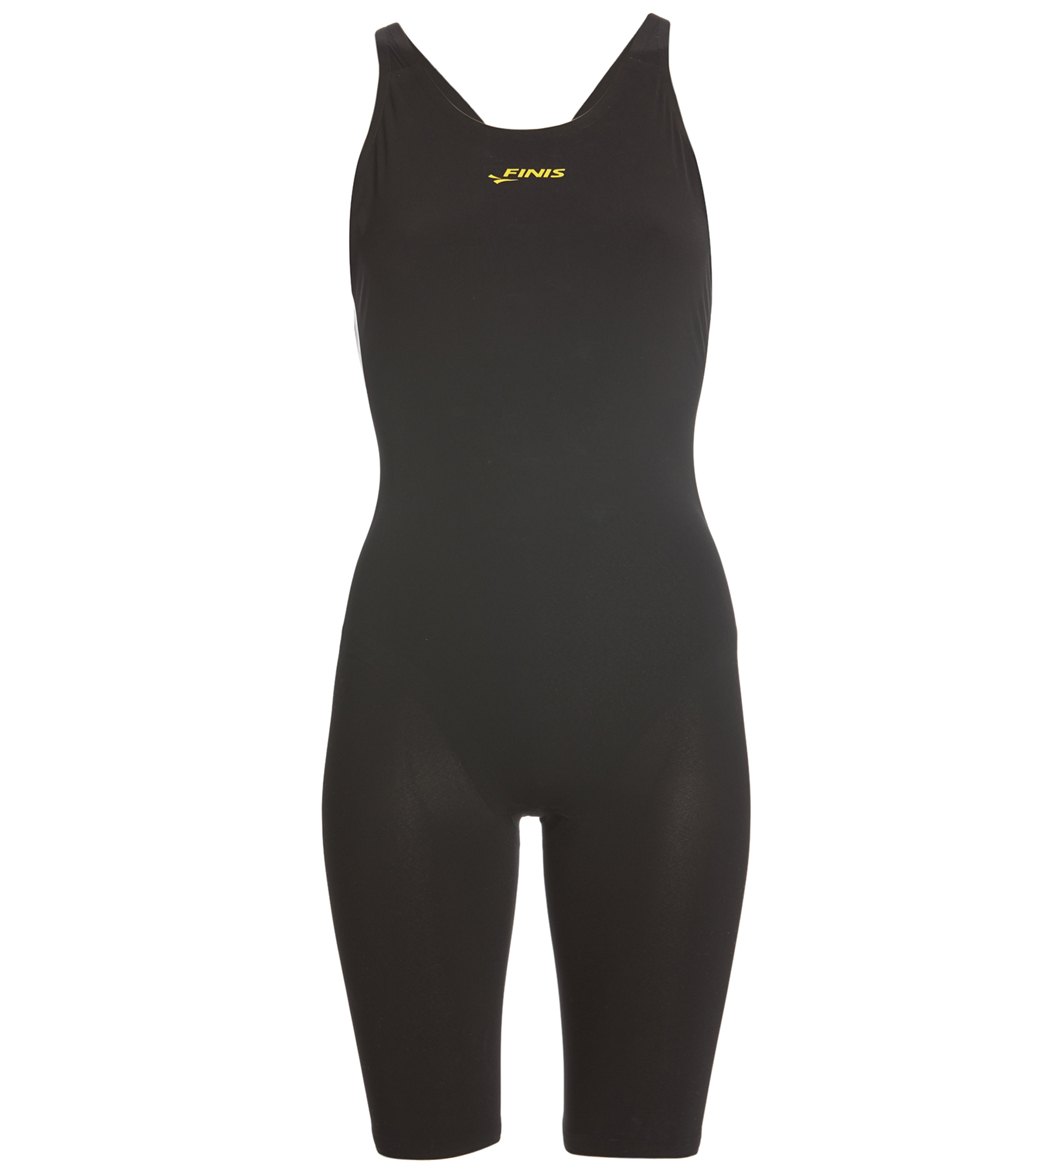 FINIS Women's Vapor Pro Open Back Tech Suit Swimsuit